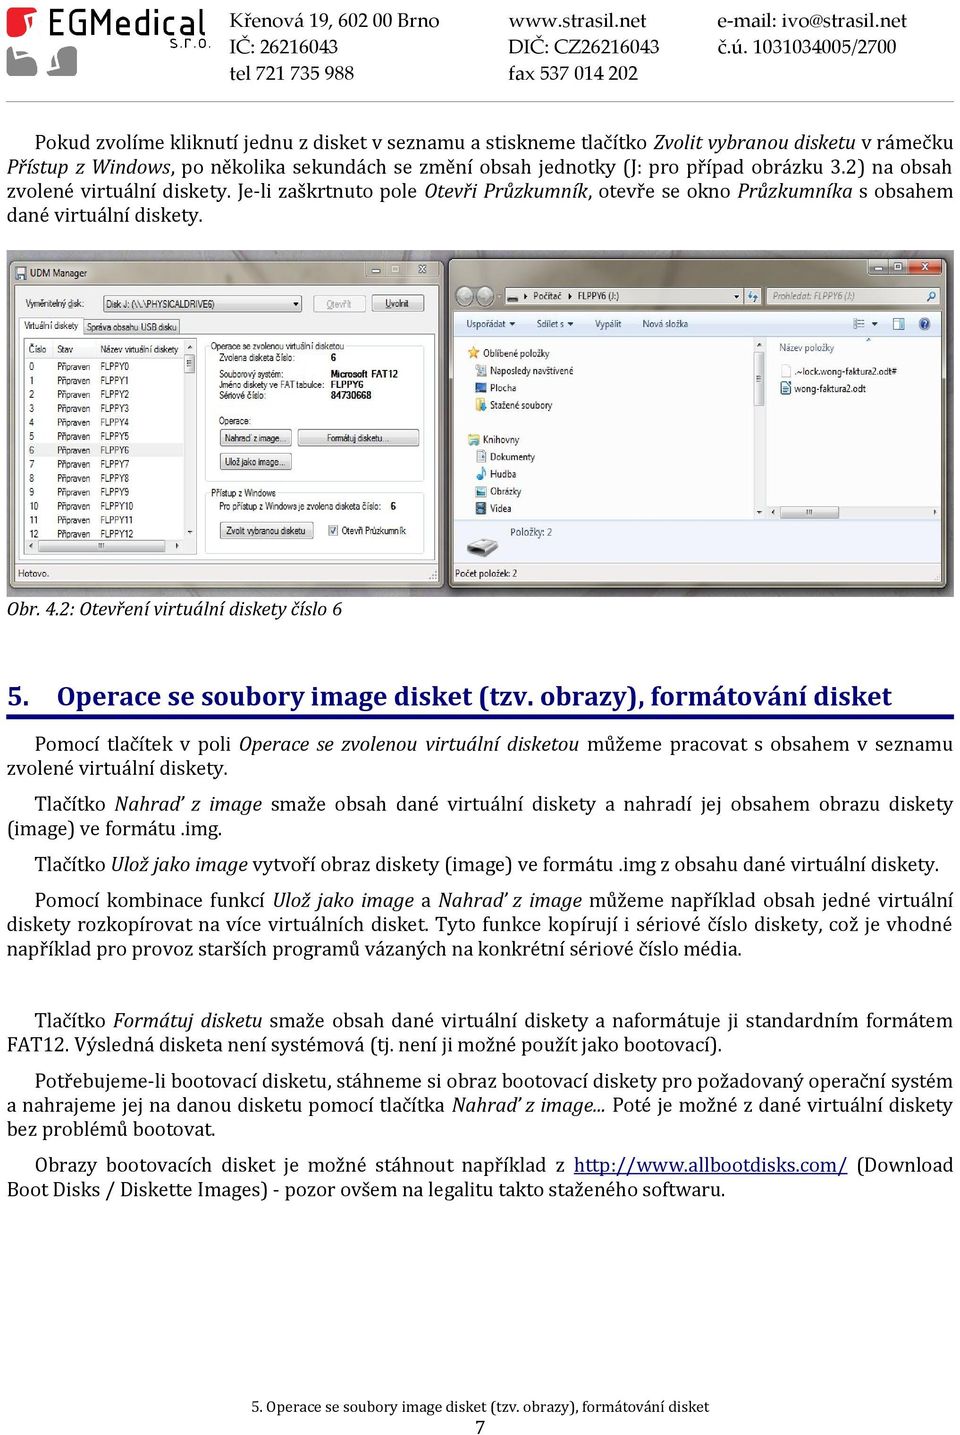 Operace se soubory image disket (tzv. obrazy), formátování disket Pomocí tlačítek v poli Operace se zvolenou virtuální disketou můžeme pracovat s obsahem v seznamu zvolené virtuální diskety.